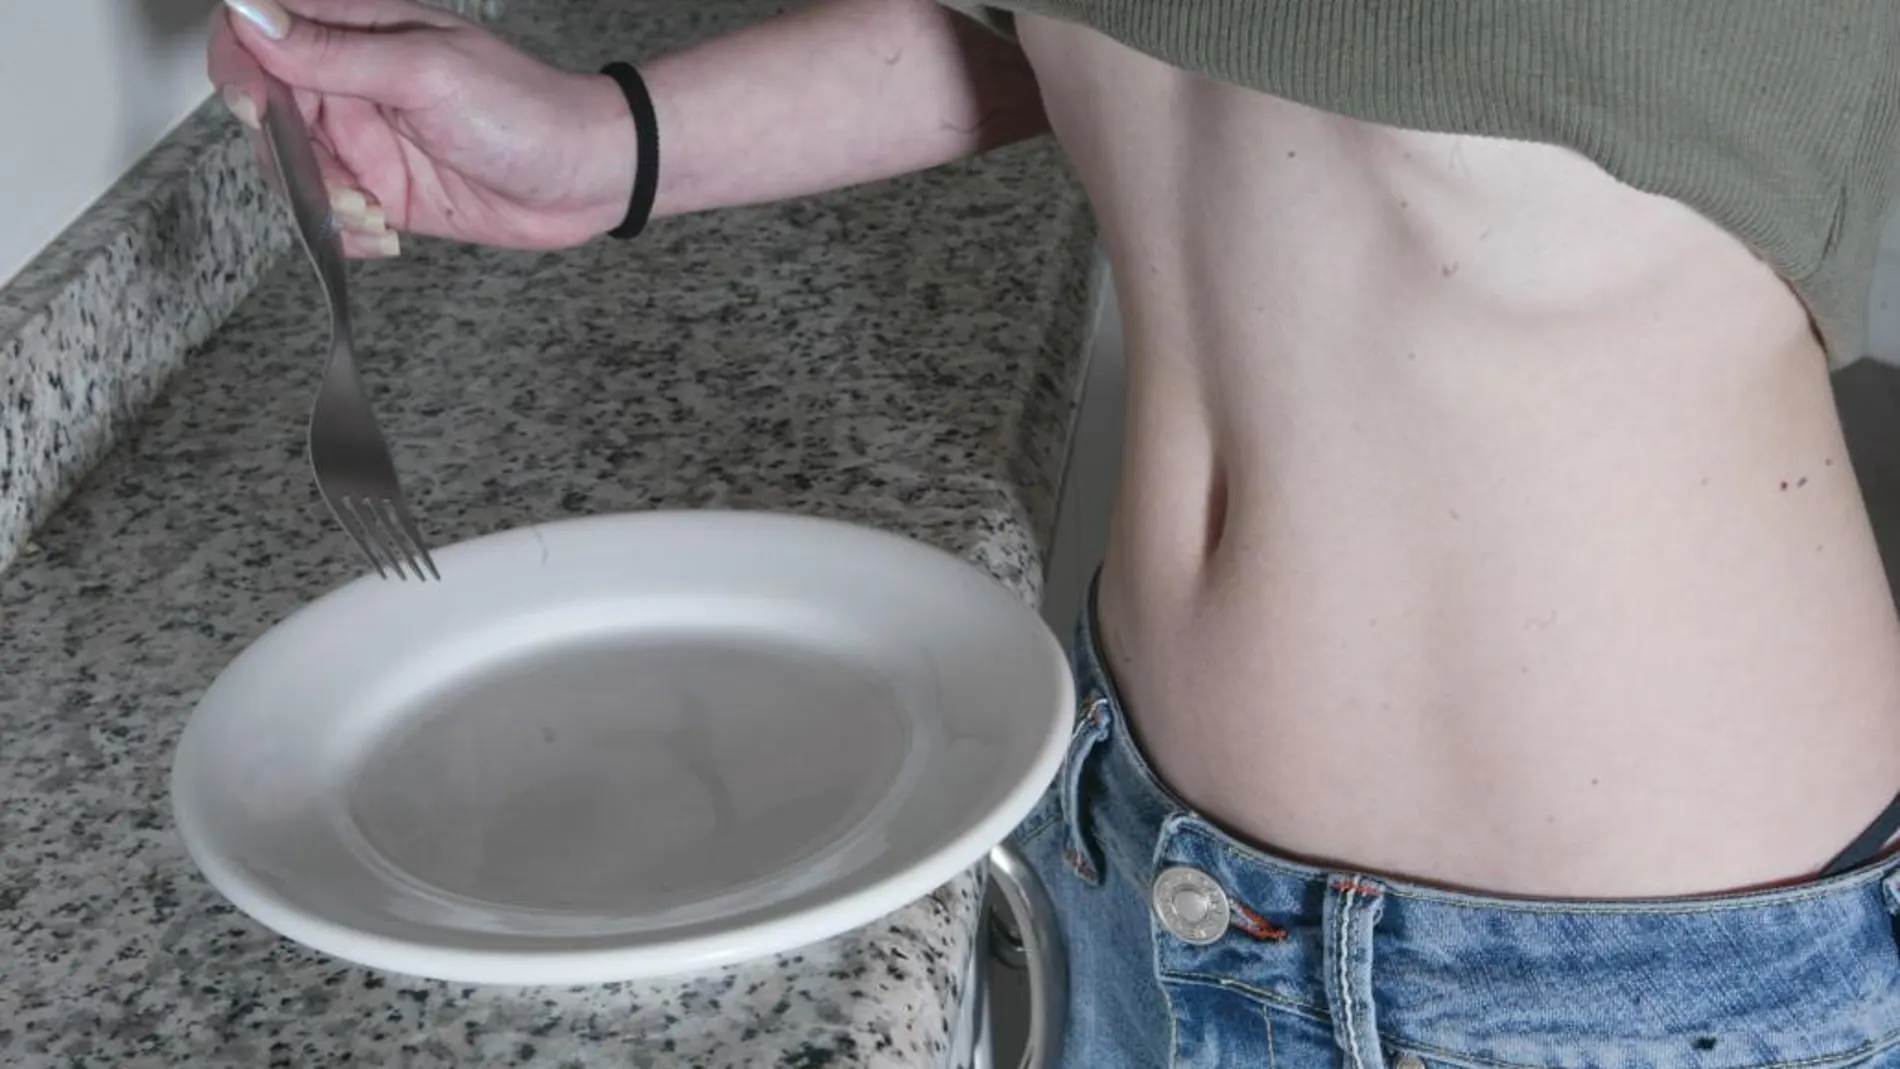 La anorexia y otros Trastornos de la Conducta Alimentaria han aumentado y se ha agravado por la pandemia